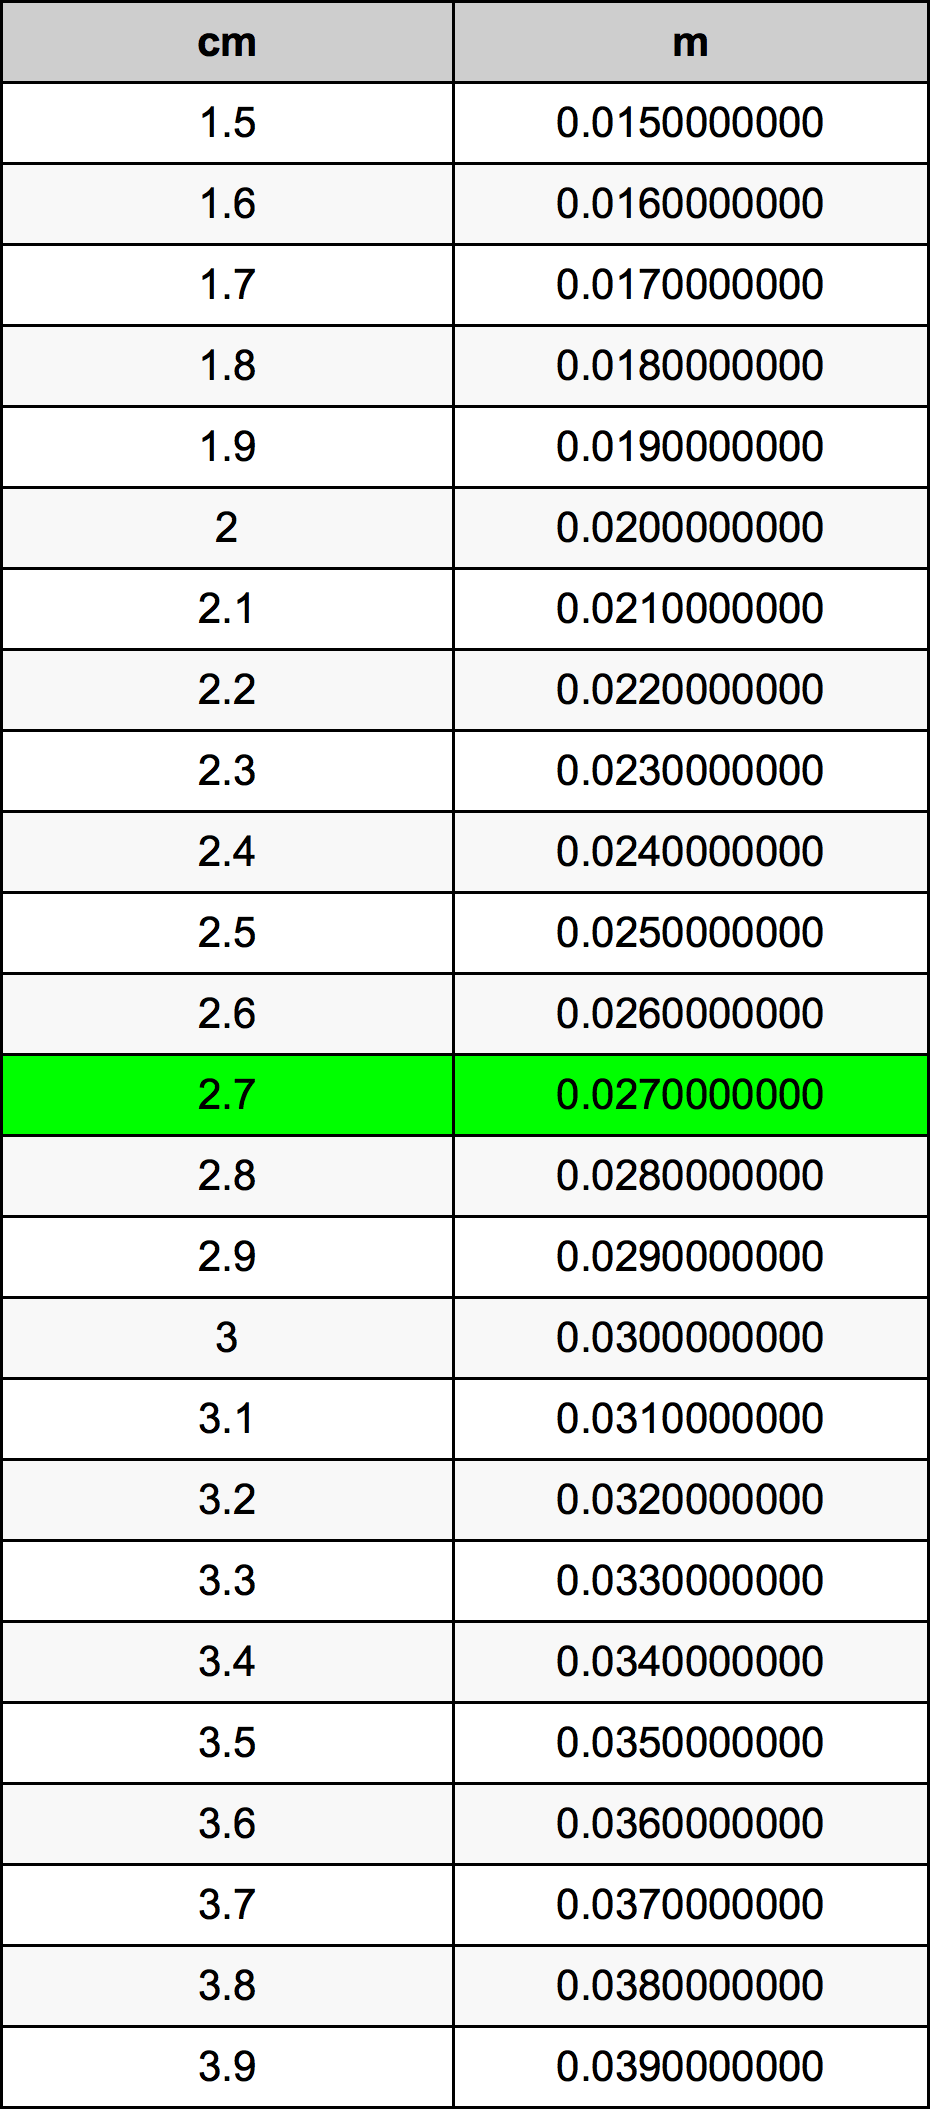 2.7 Centiméter átszámítási táblázat